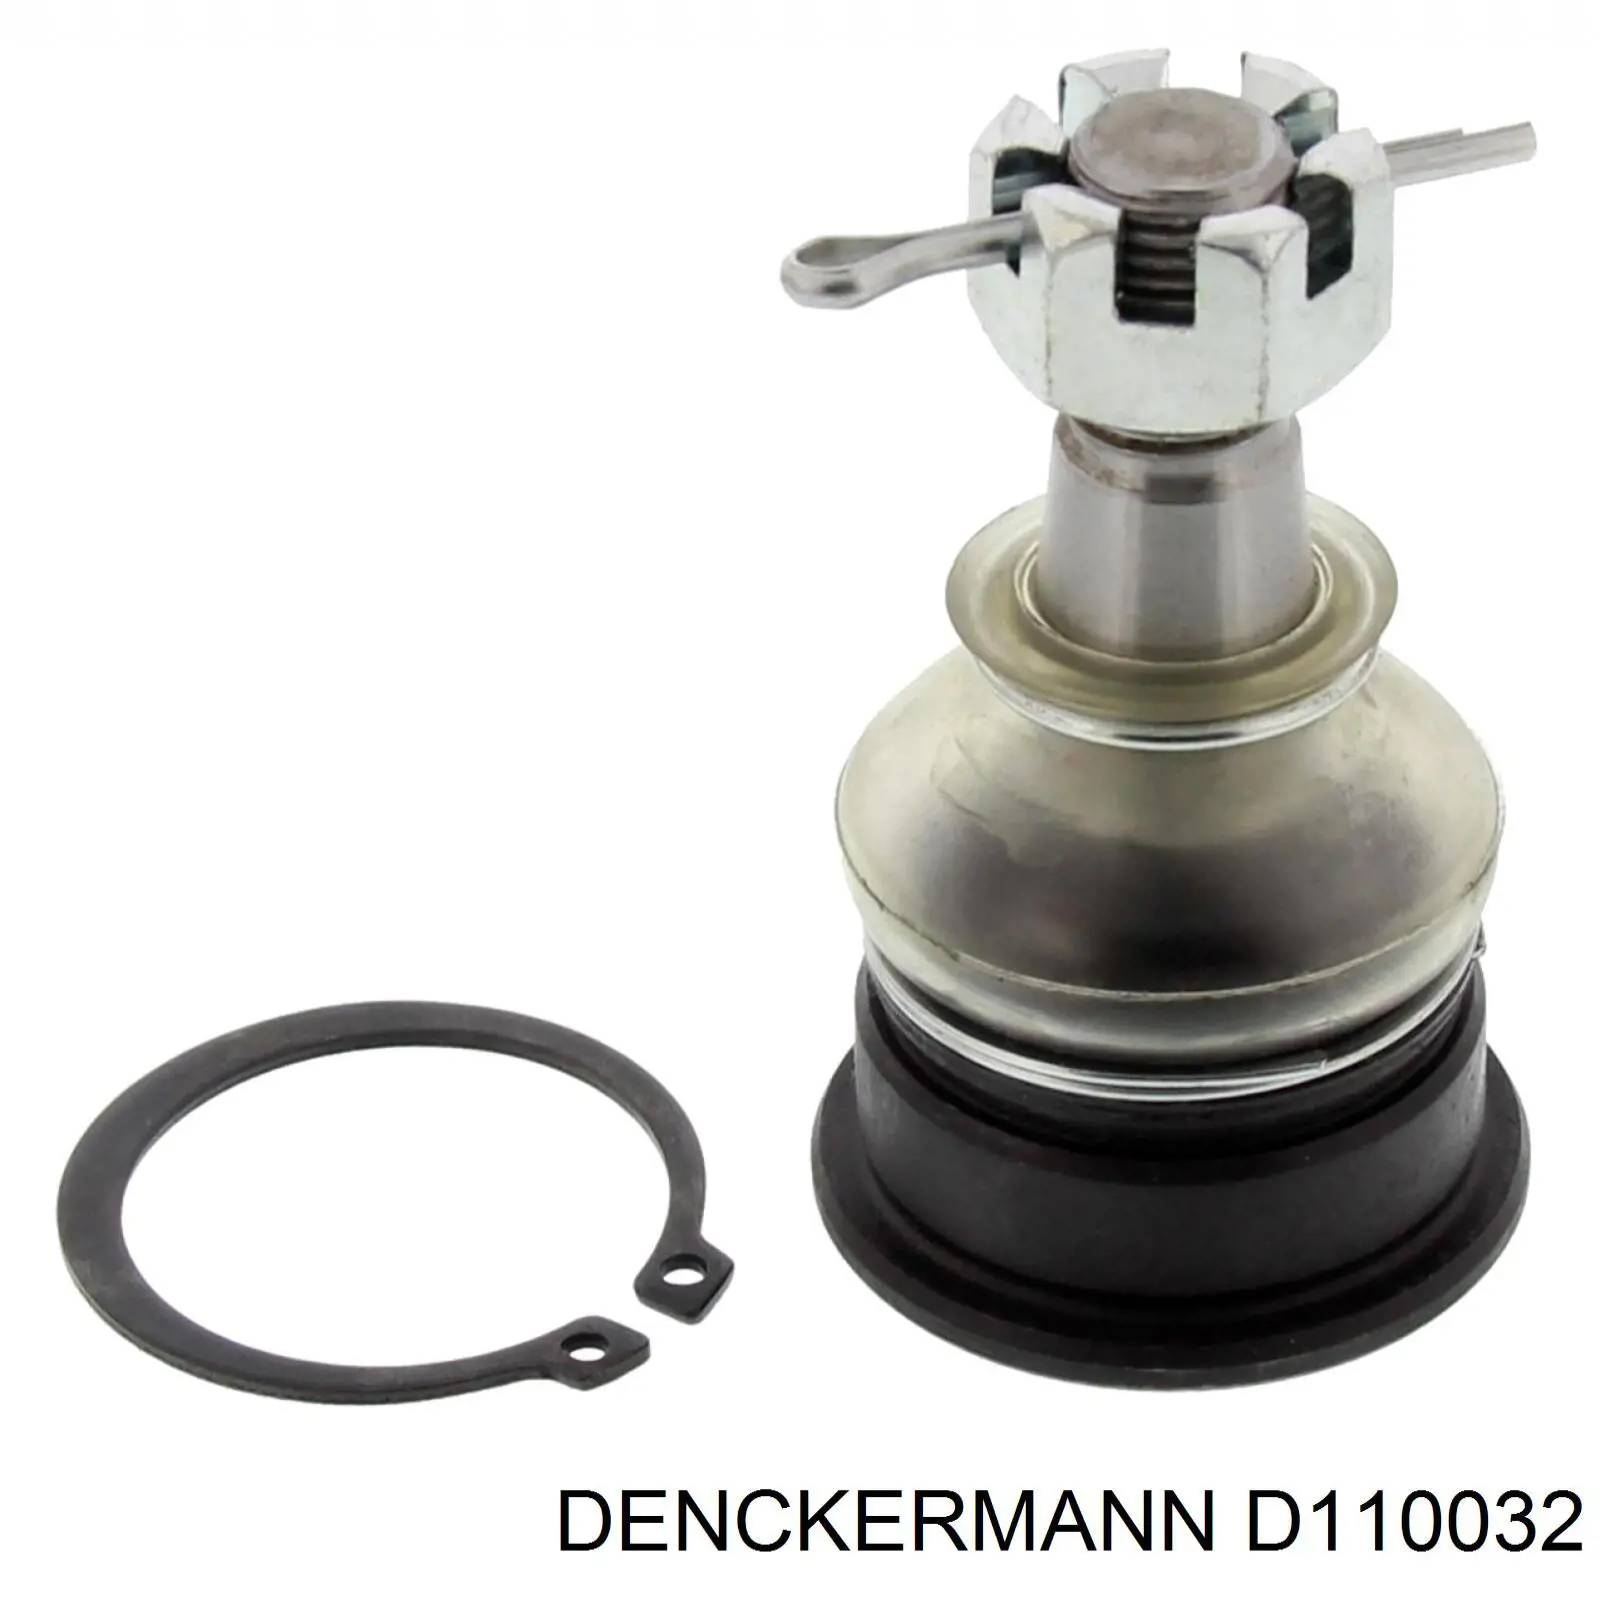 D110032 Denckermann rótula de suspensión inferior